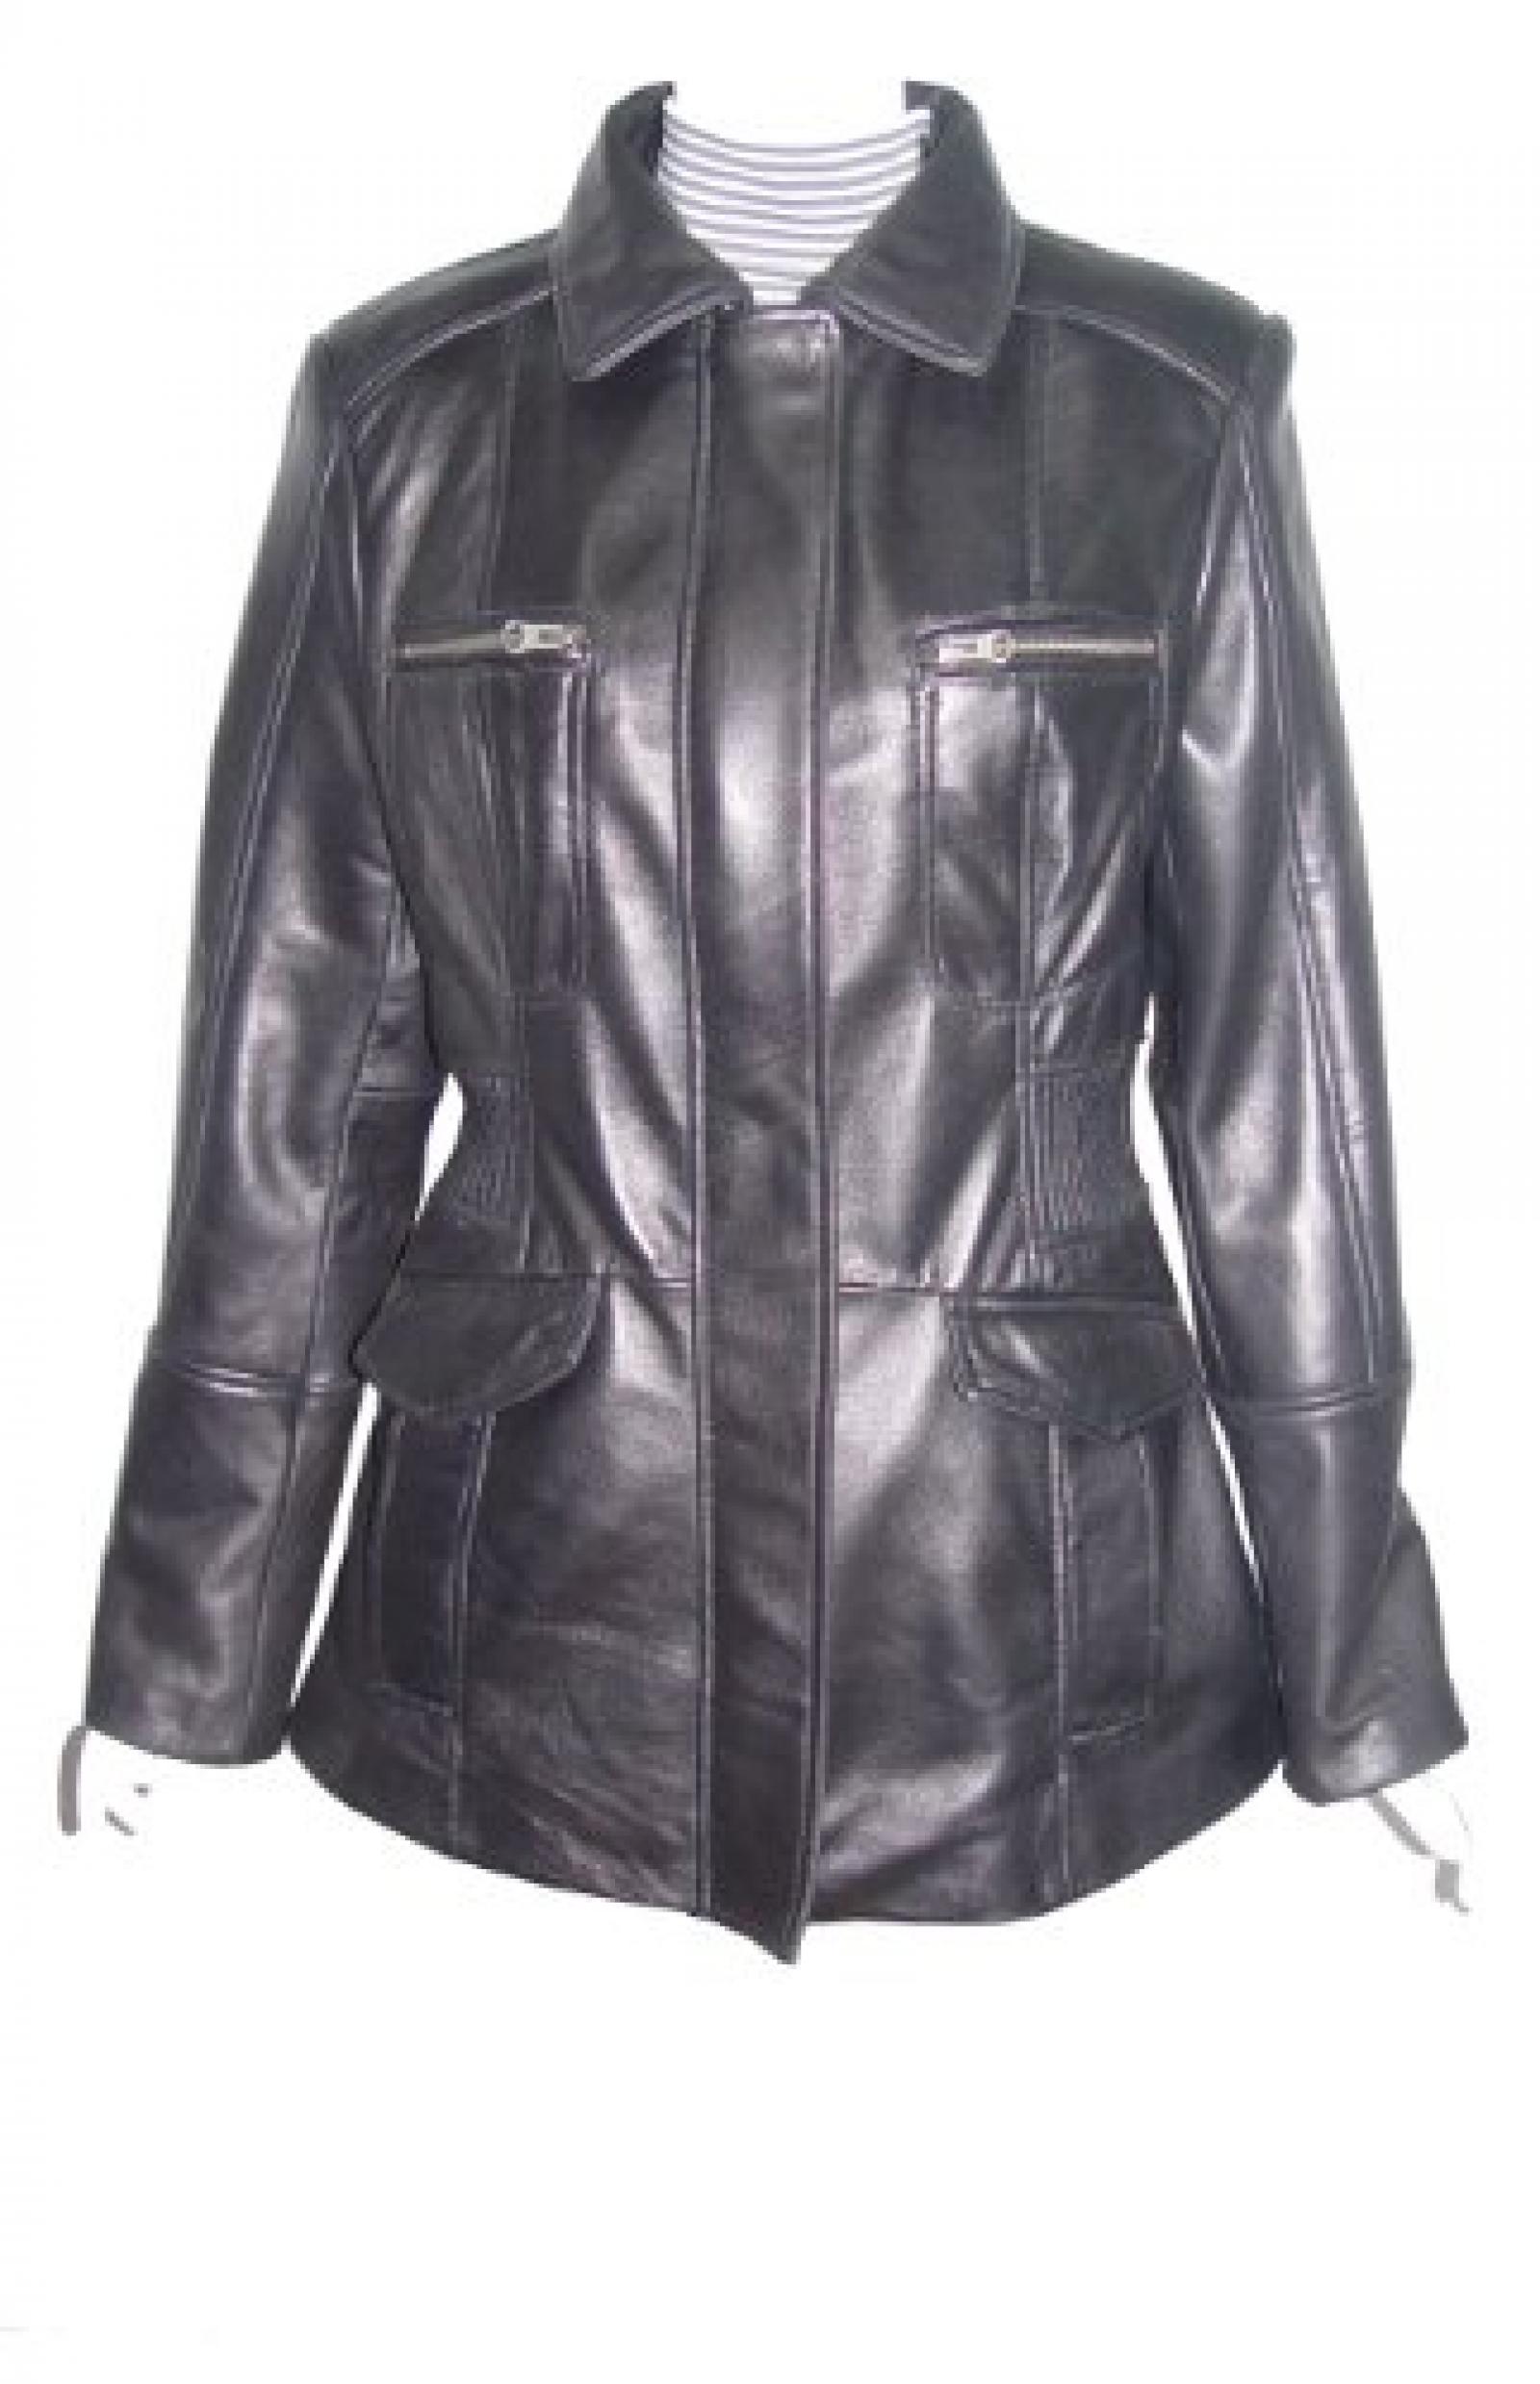 Nettailor Women PETITE SZ 4203 Leather Casual Jacket Placket Front Chest Pocket 